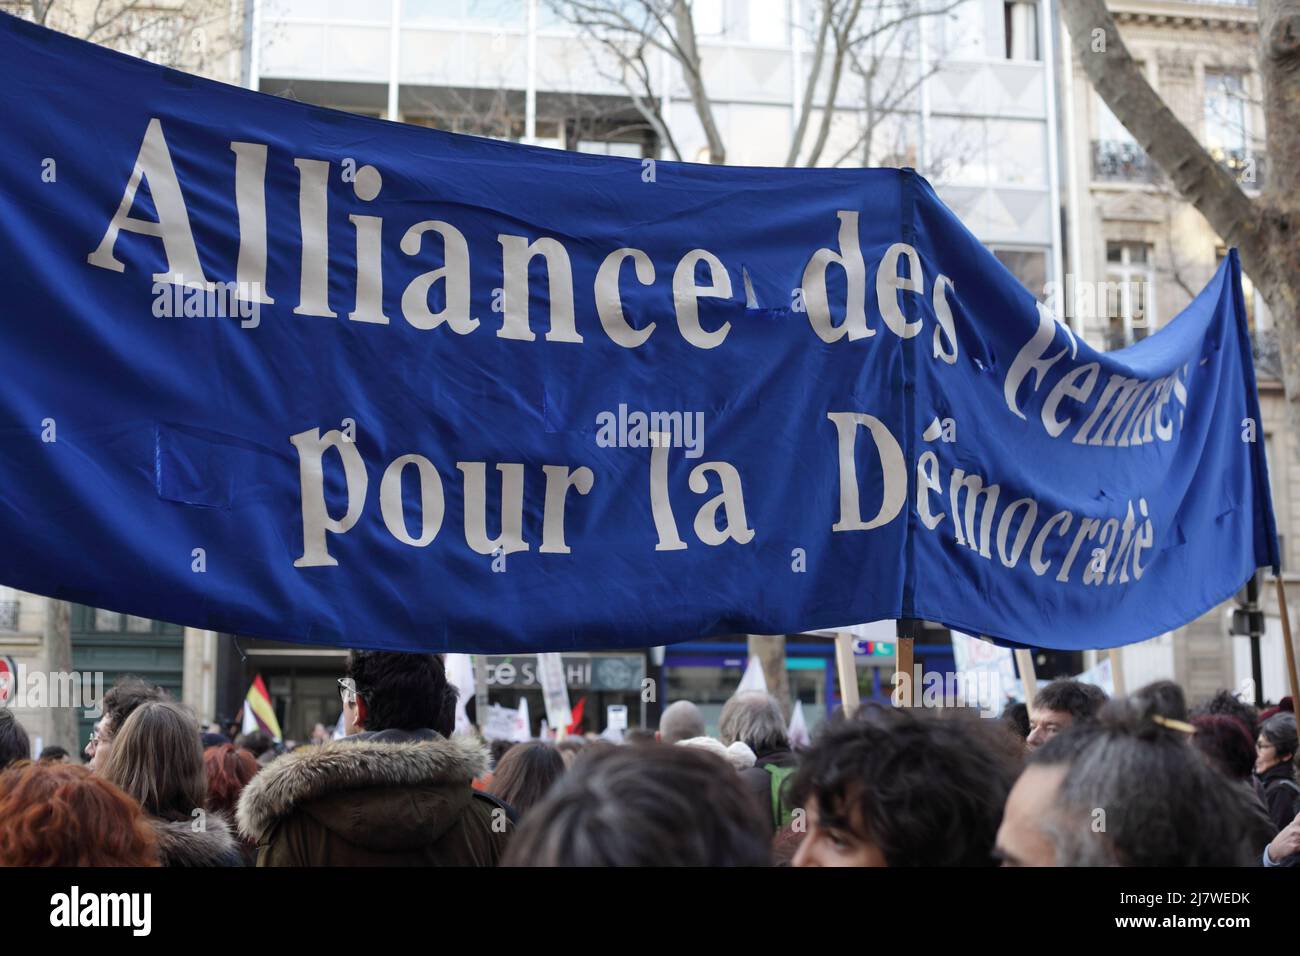 Paris : Manifestation contre le projet de loi anti-avortement en Espagne 01er février 2014. Banderole Alliance des femmes pour la democratie Stock Photo